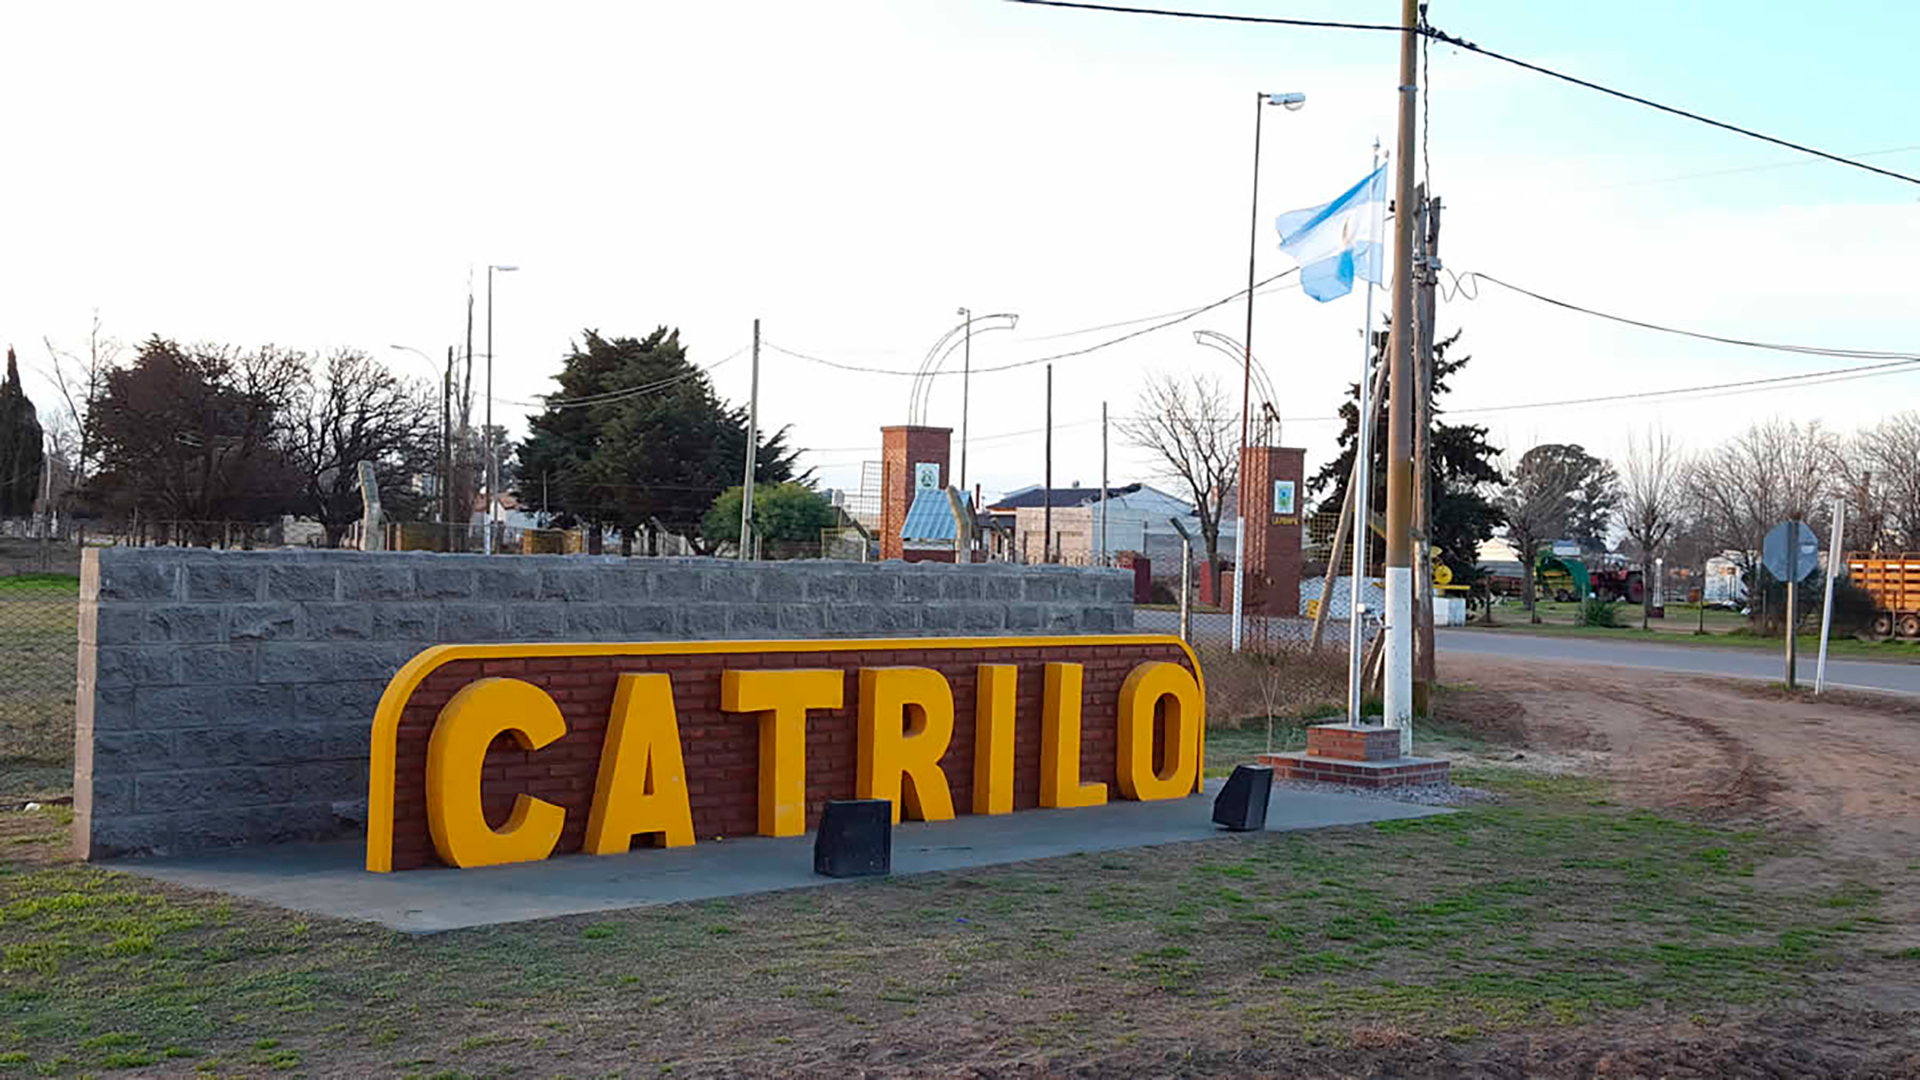 El hecho tuvo lugar en el Municipio de Catriló, a 82 km de Santa Rosa